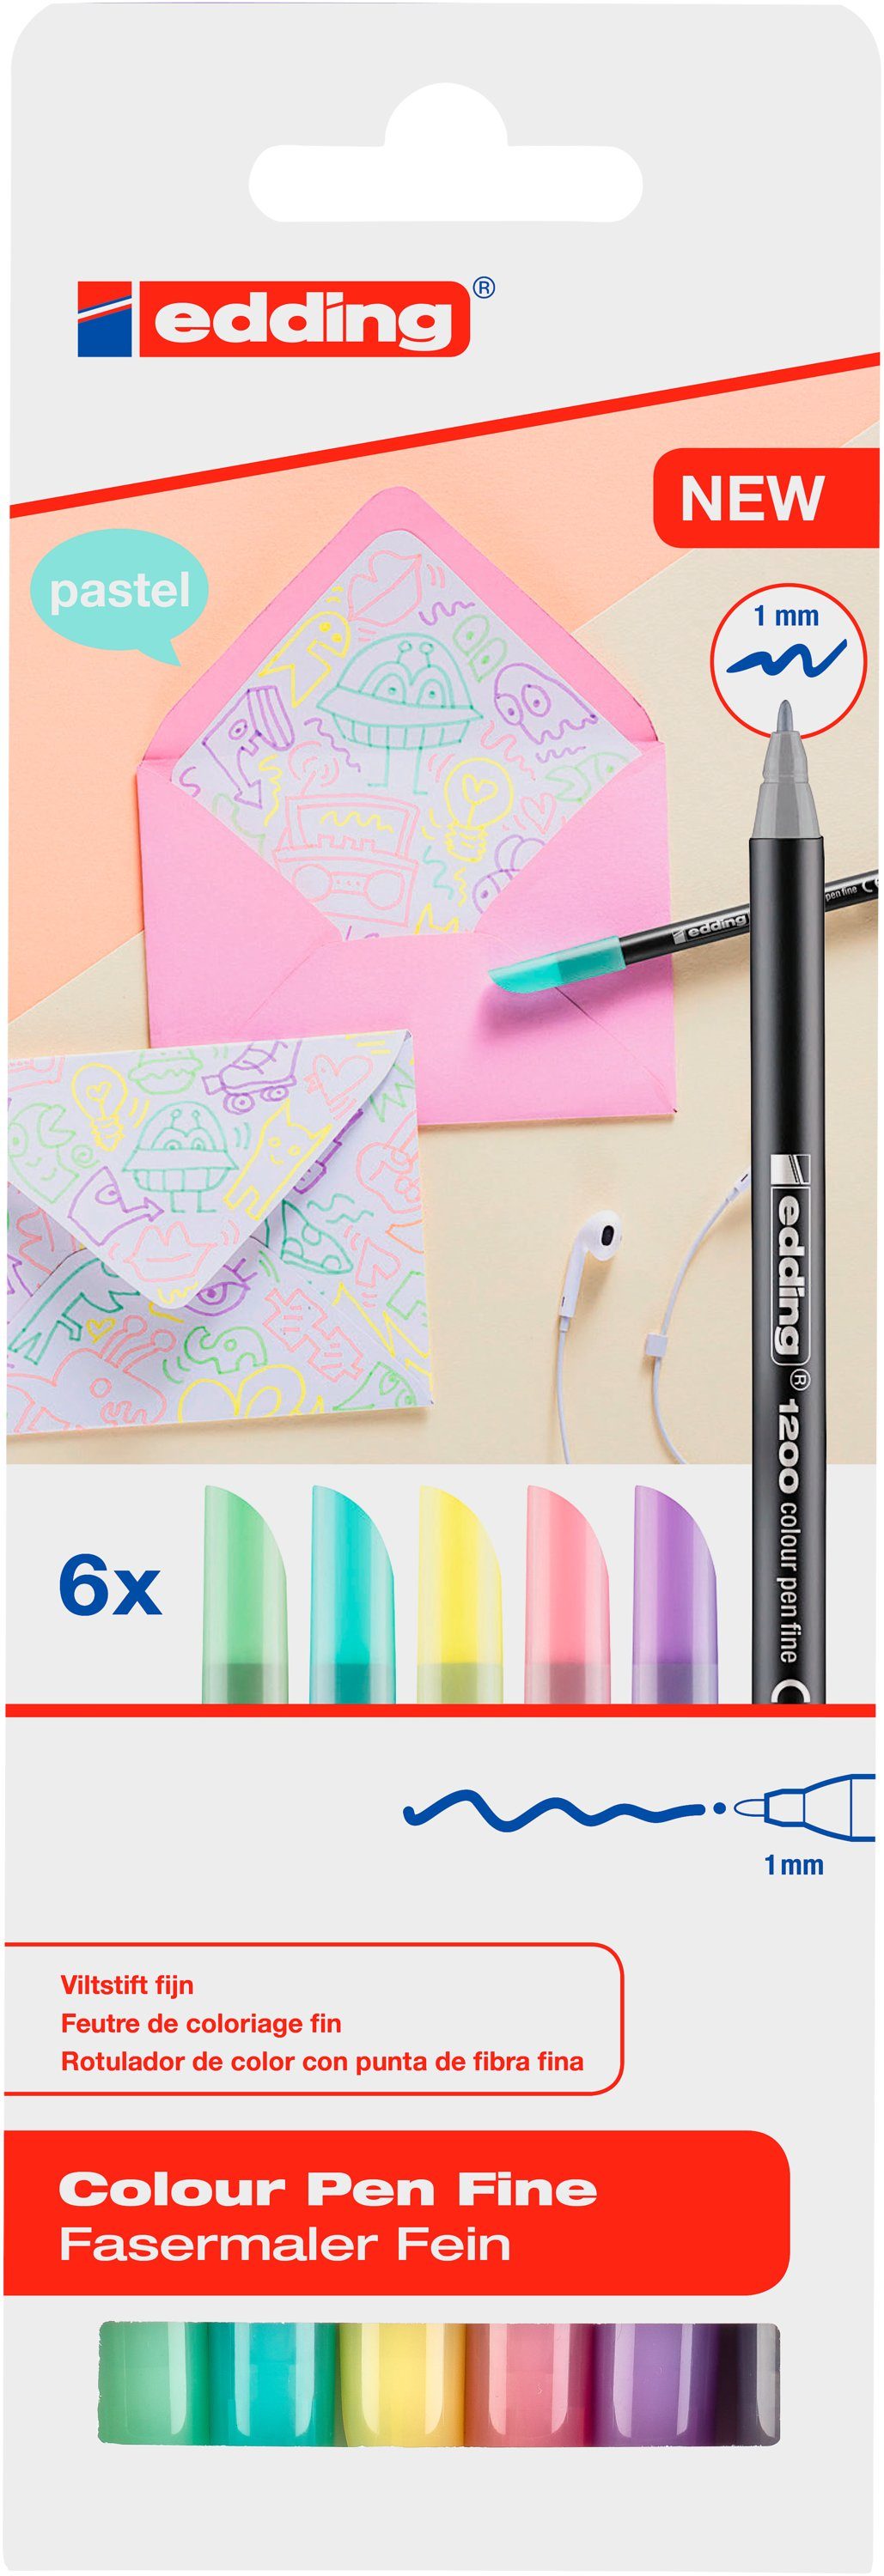 edding Faserstift 1200 Colour Pen Fine Pastell, 6er-Set